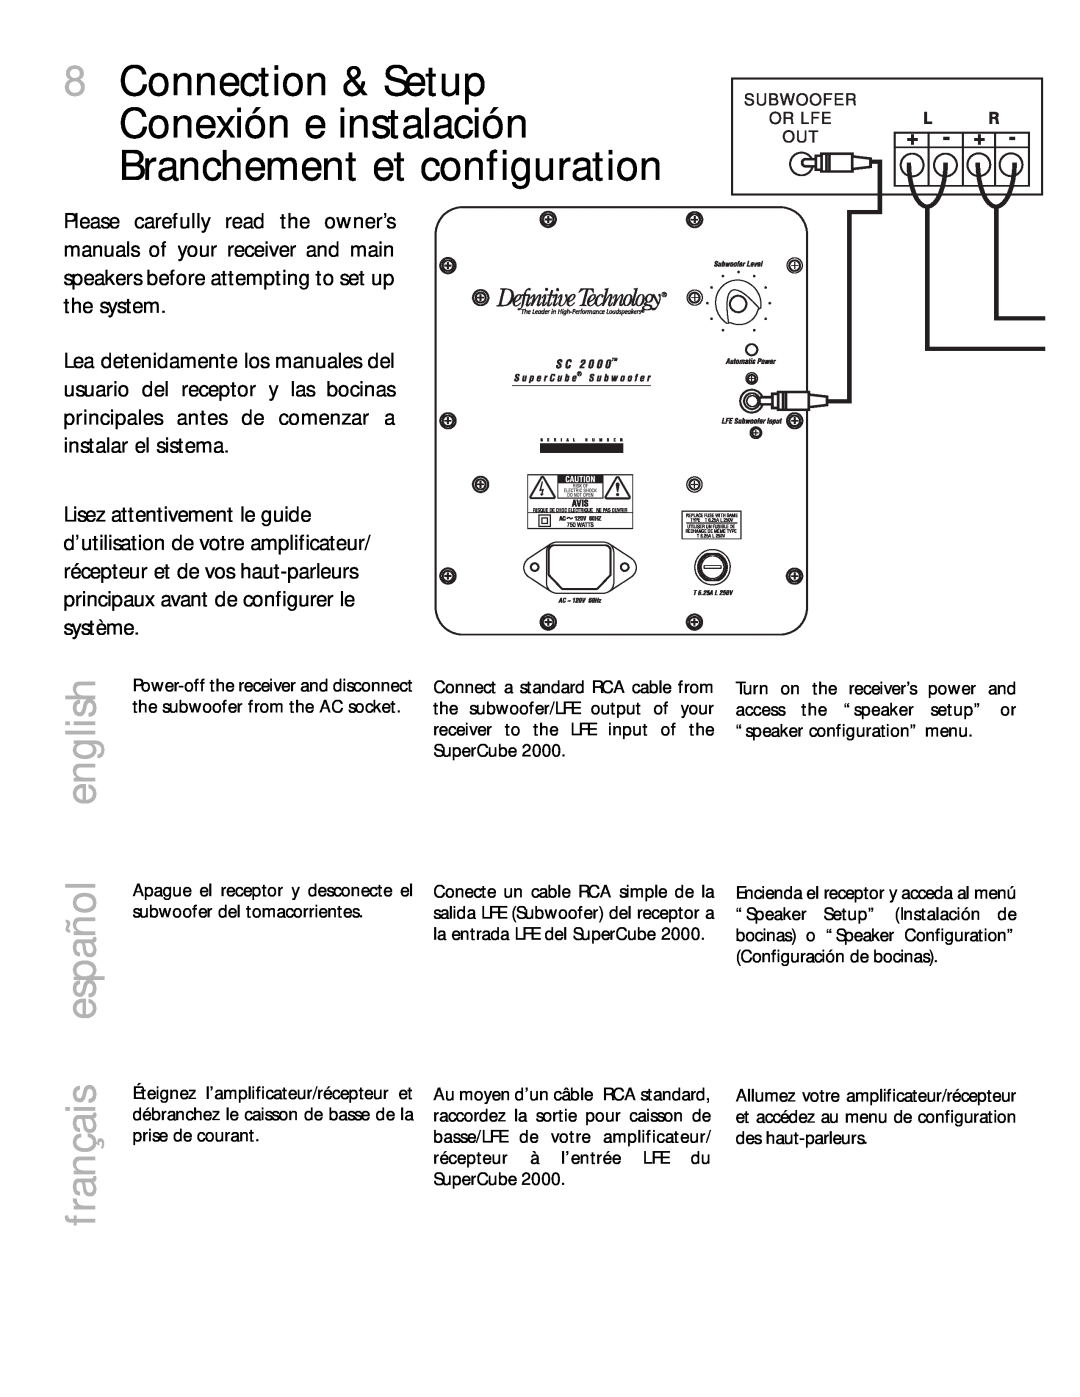 Definitive Technology 2000 owner manual 8Connection & Setup Conexión e instalación, Branchement et configuration 